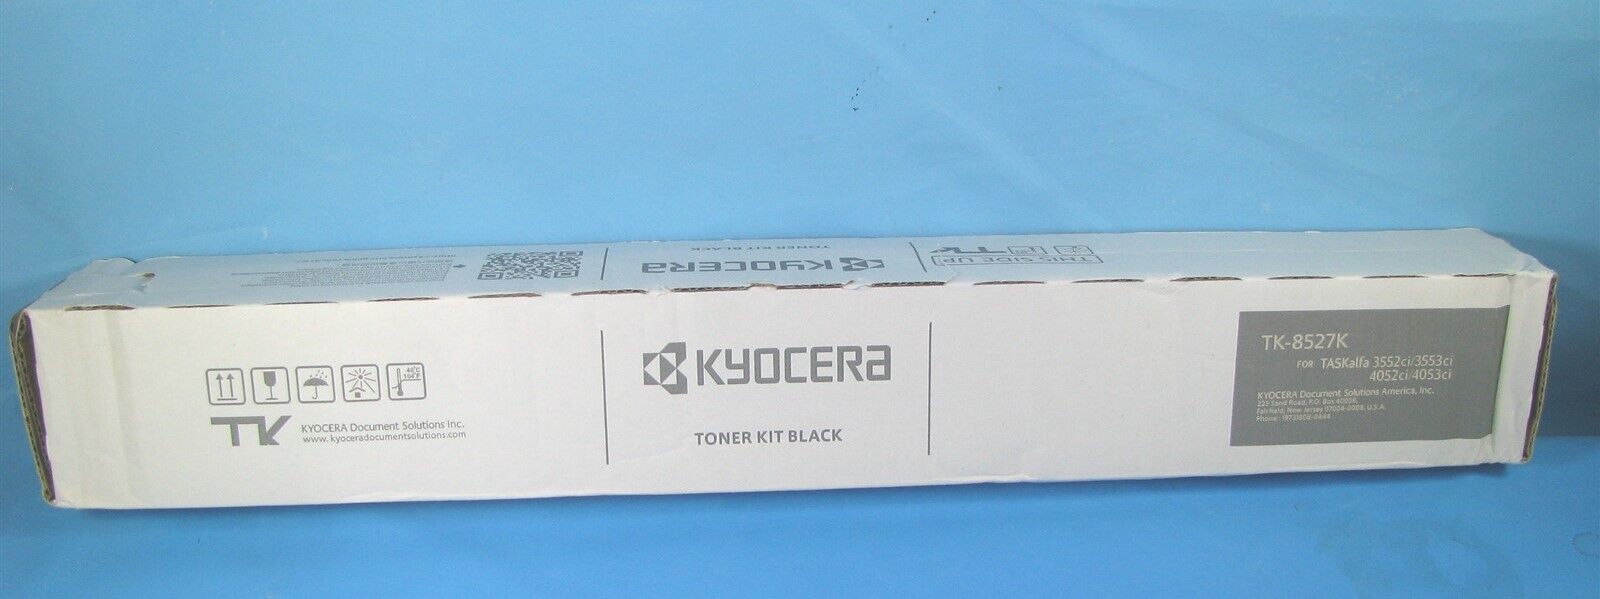 GENUINE KYOCERA BLACK TONER KIT - TK-8527K - NEW IN BOX - 